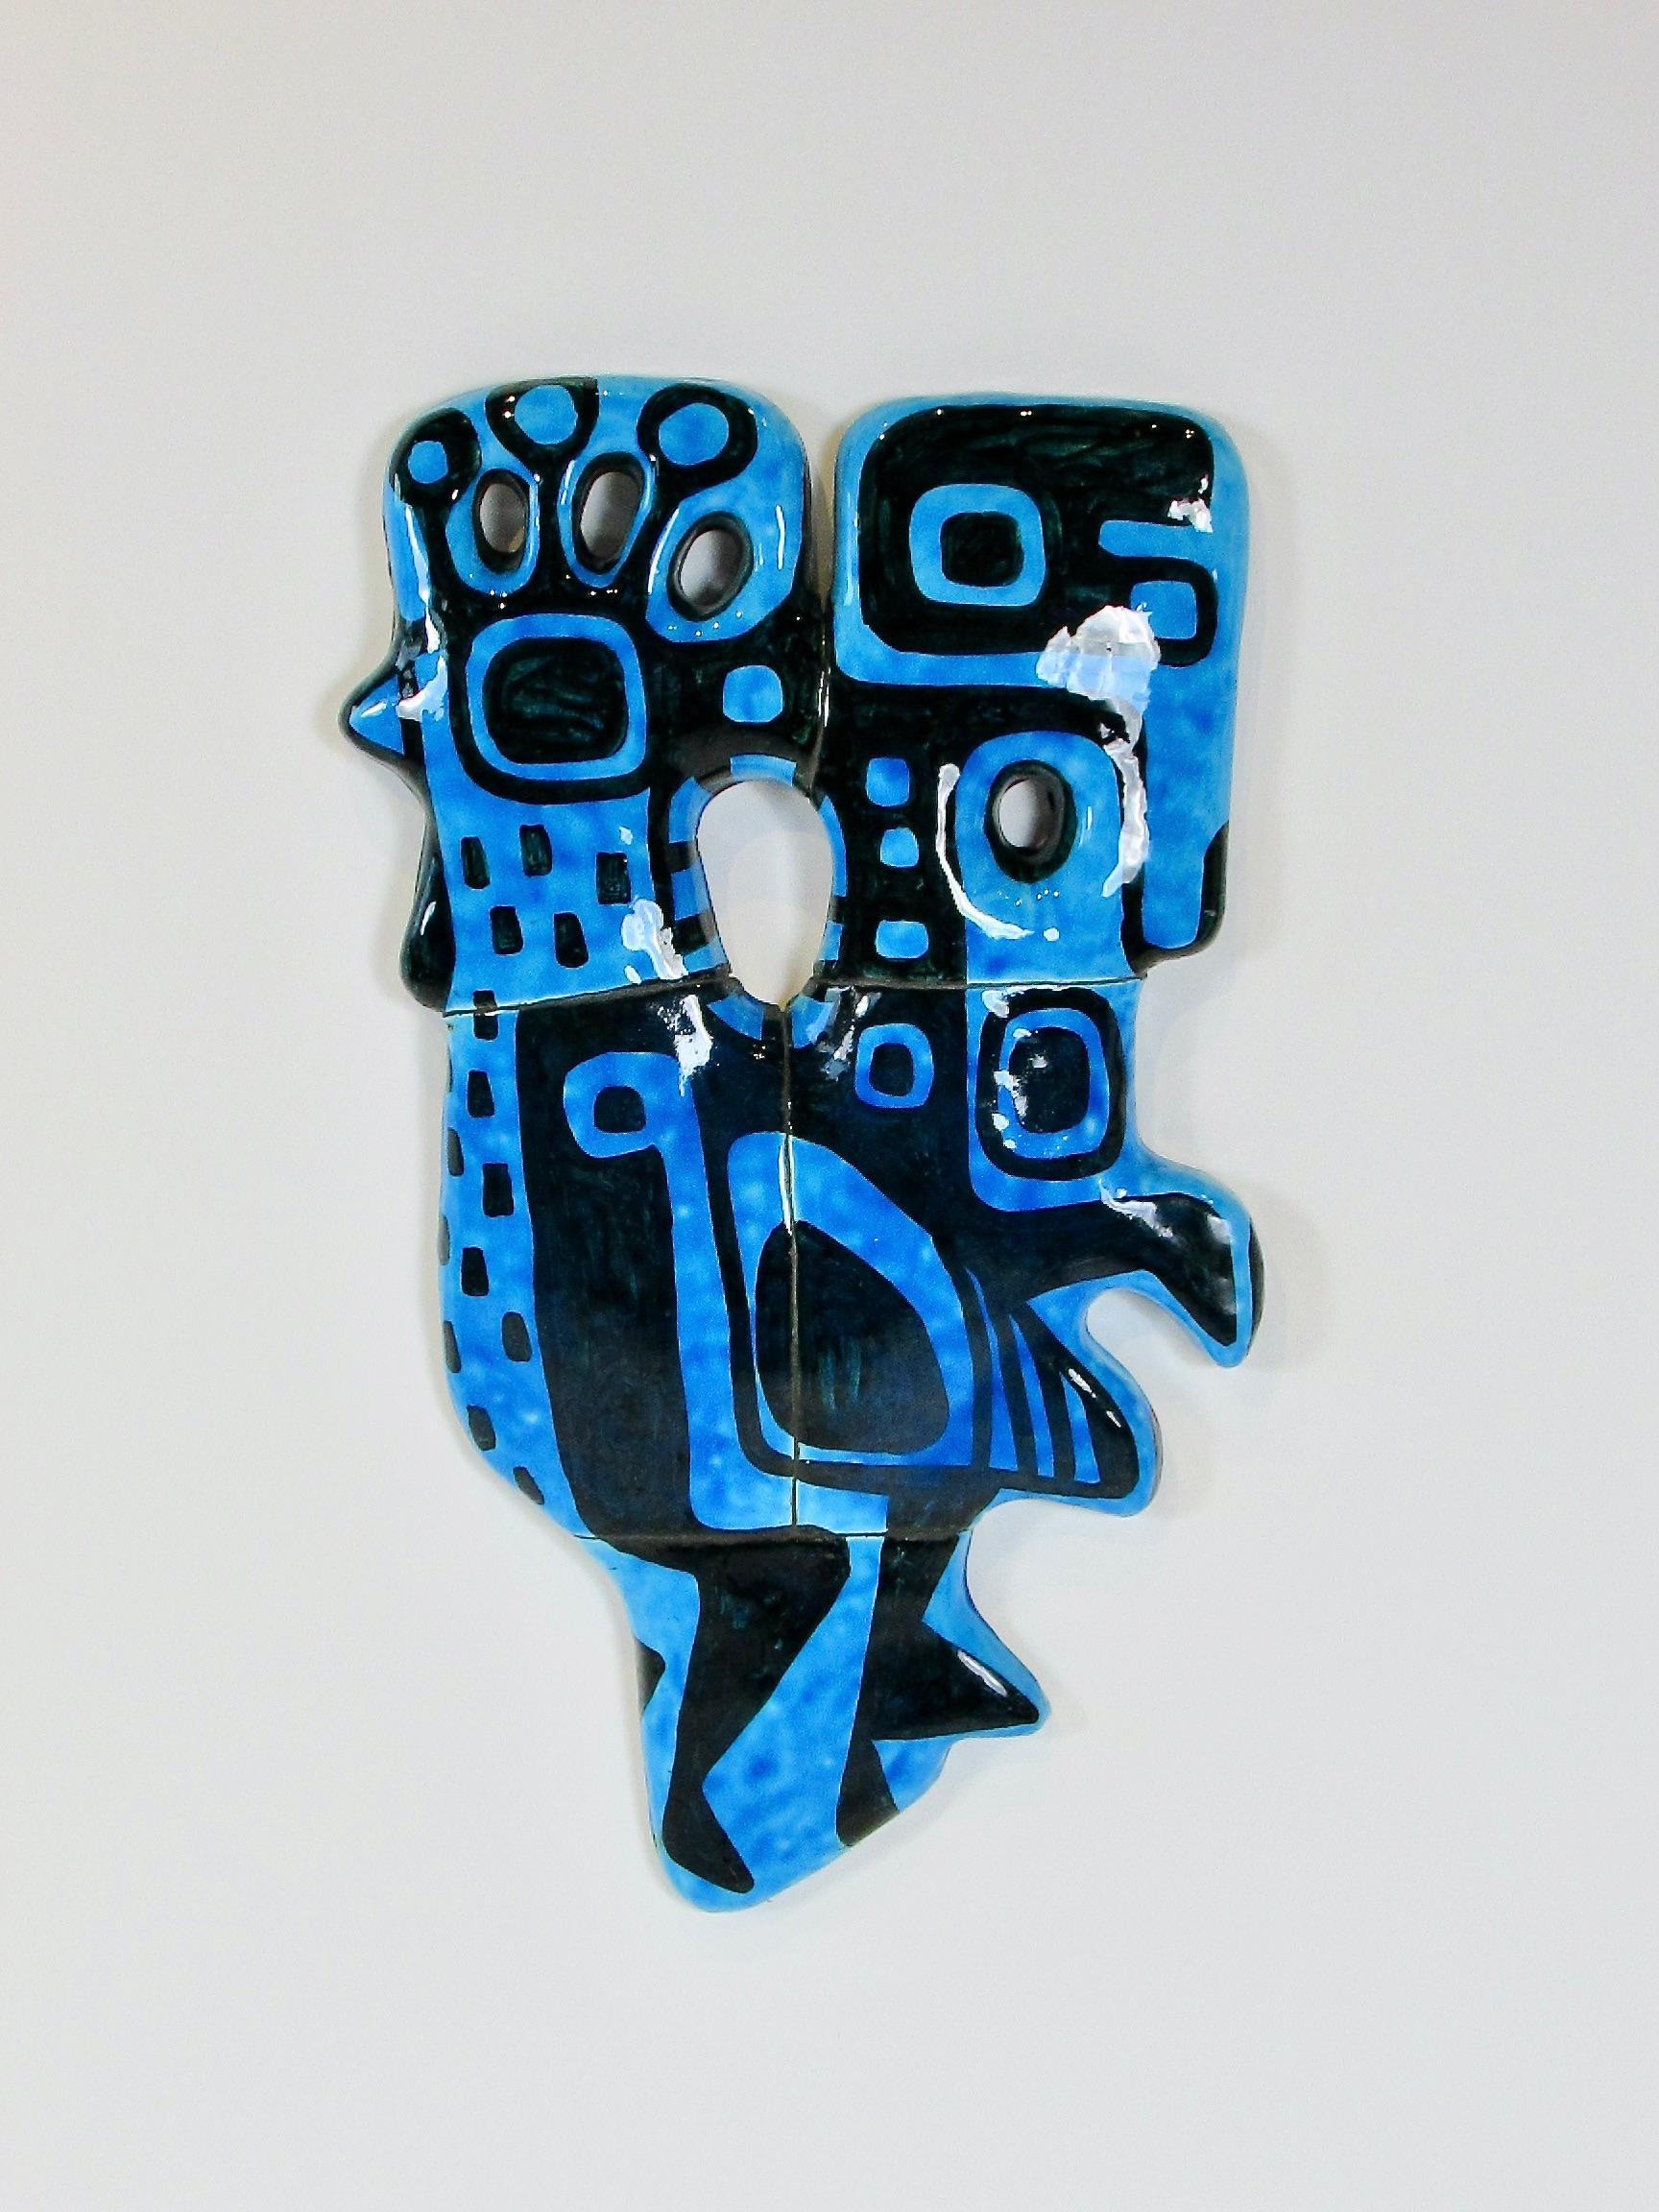 Segmentierte Keramikstücke, die zu einer feinen abstrakten Hühnerform zusammengesetzt sind. Glasiert in einem leuchtenden, vibrierenden elektrischen Blau. Rückseitig signiert und datiert 1960. 